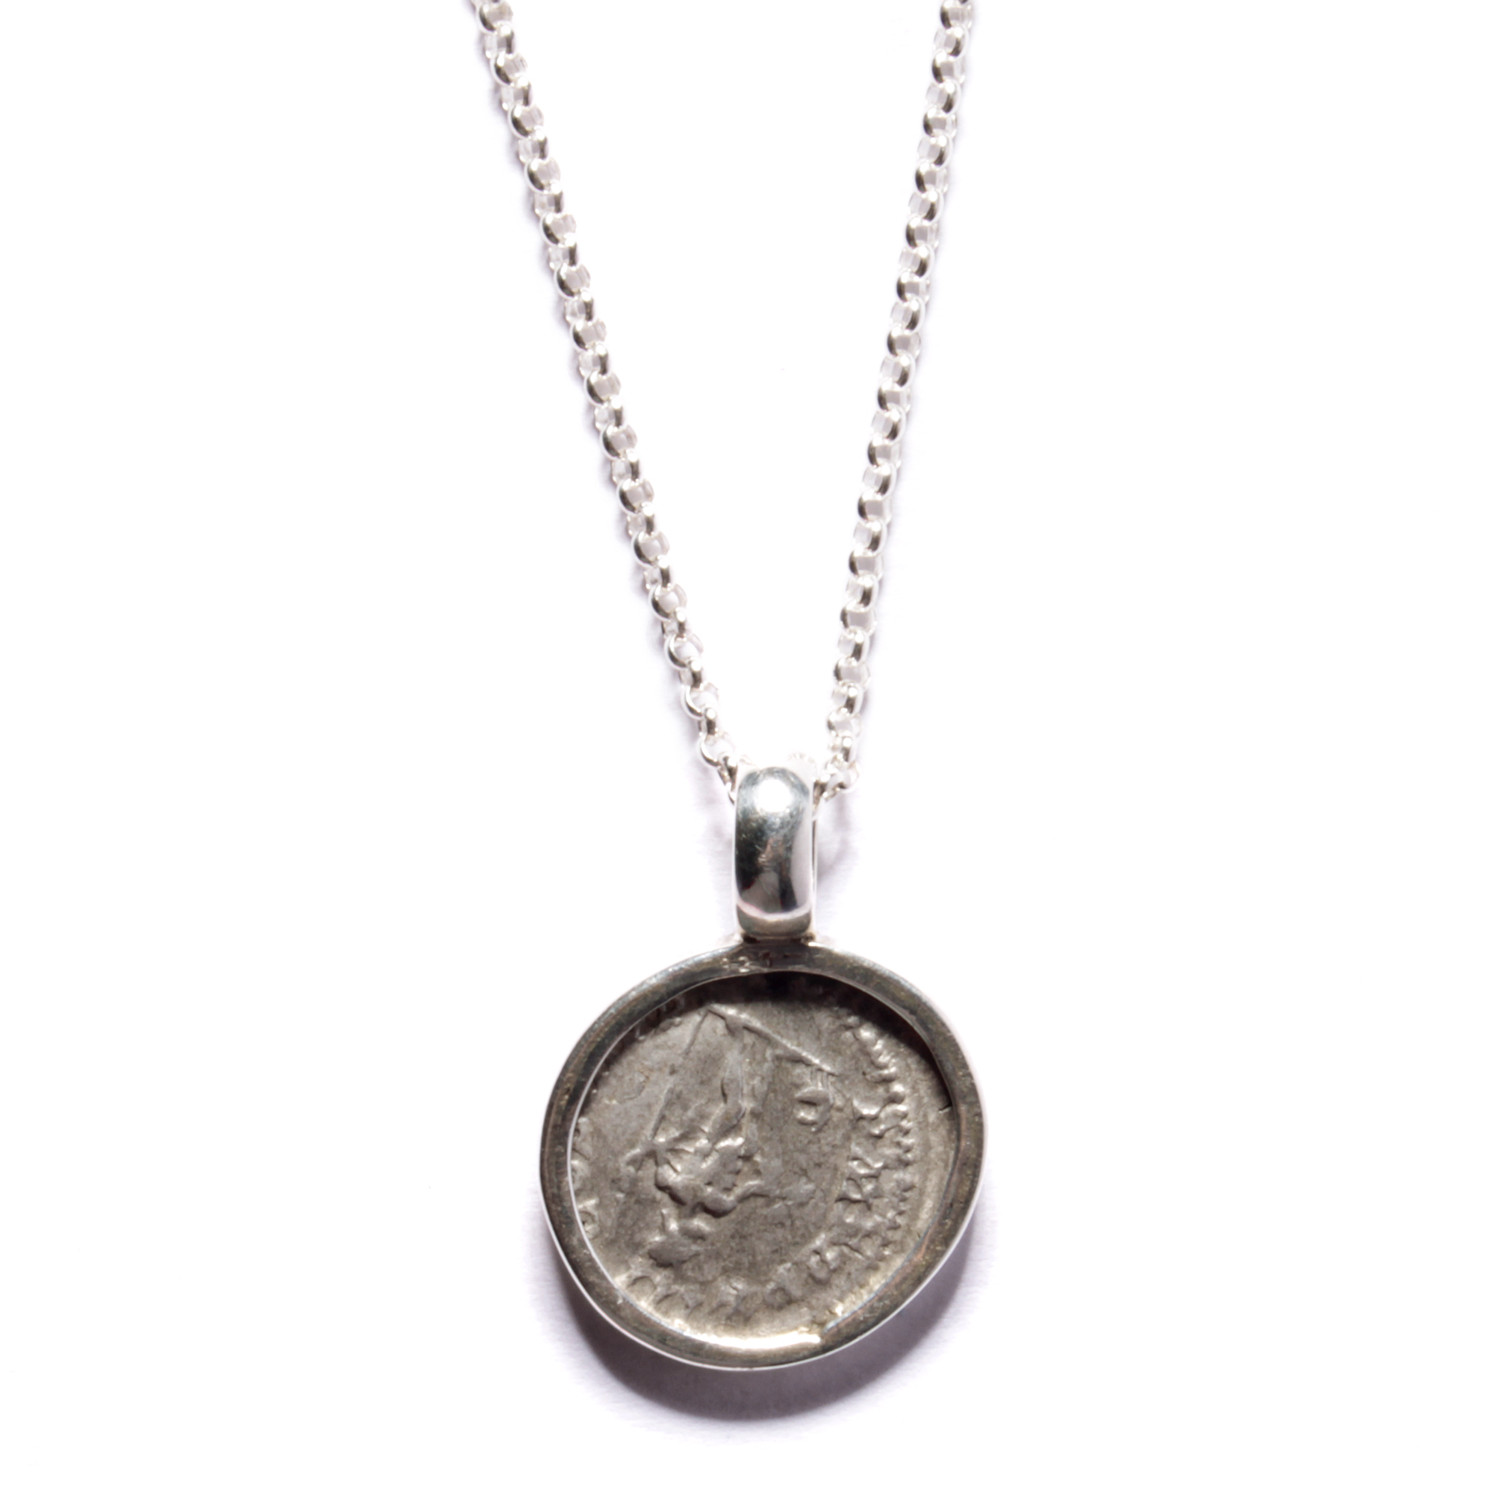 Roman Empire Septimus Severus Necklace - We Are All Smith Jewelry ...